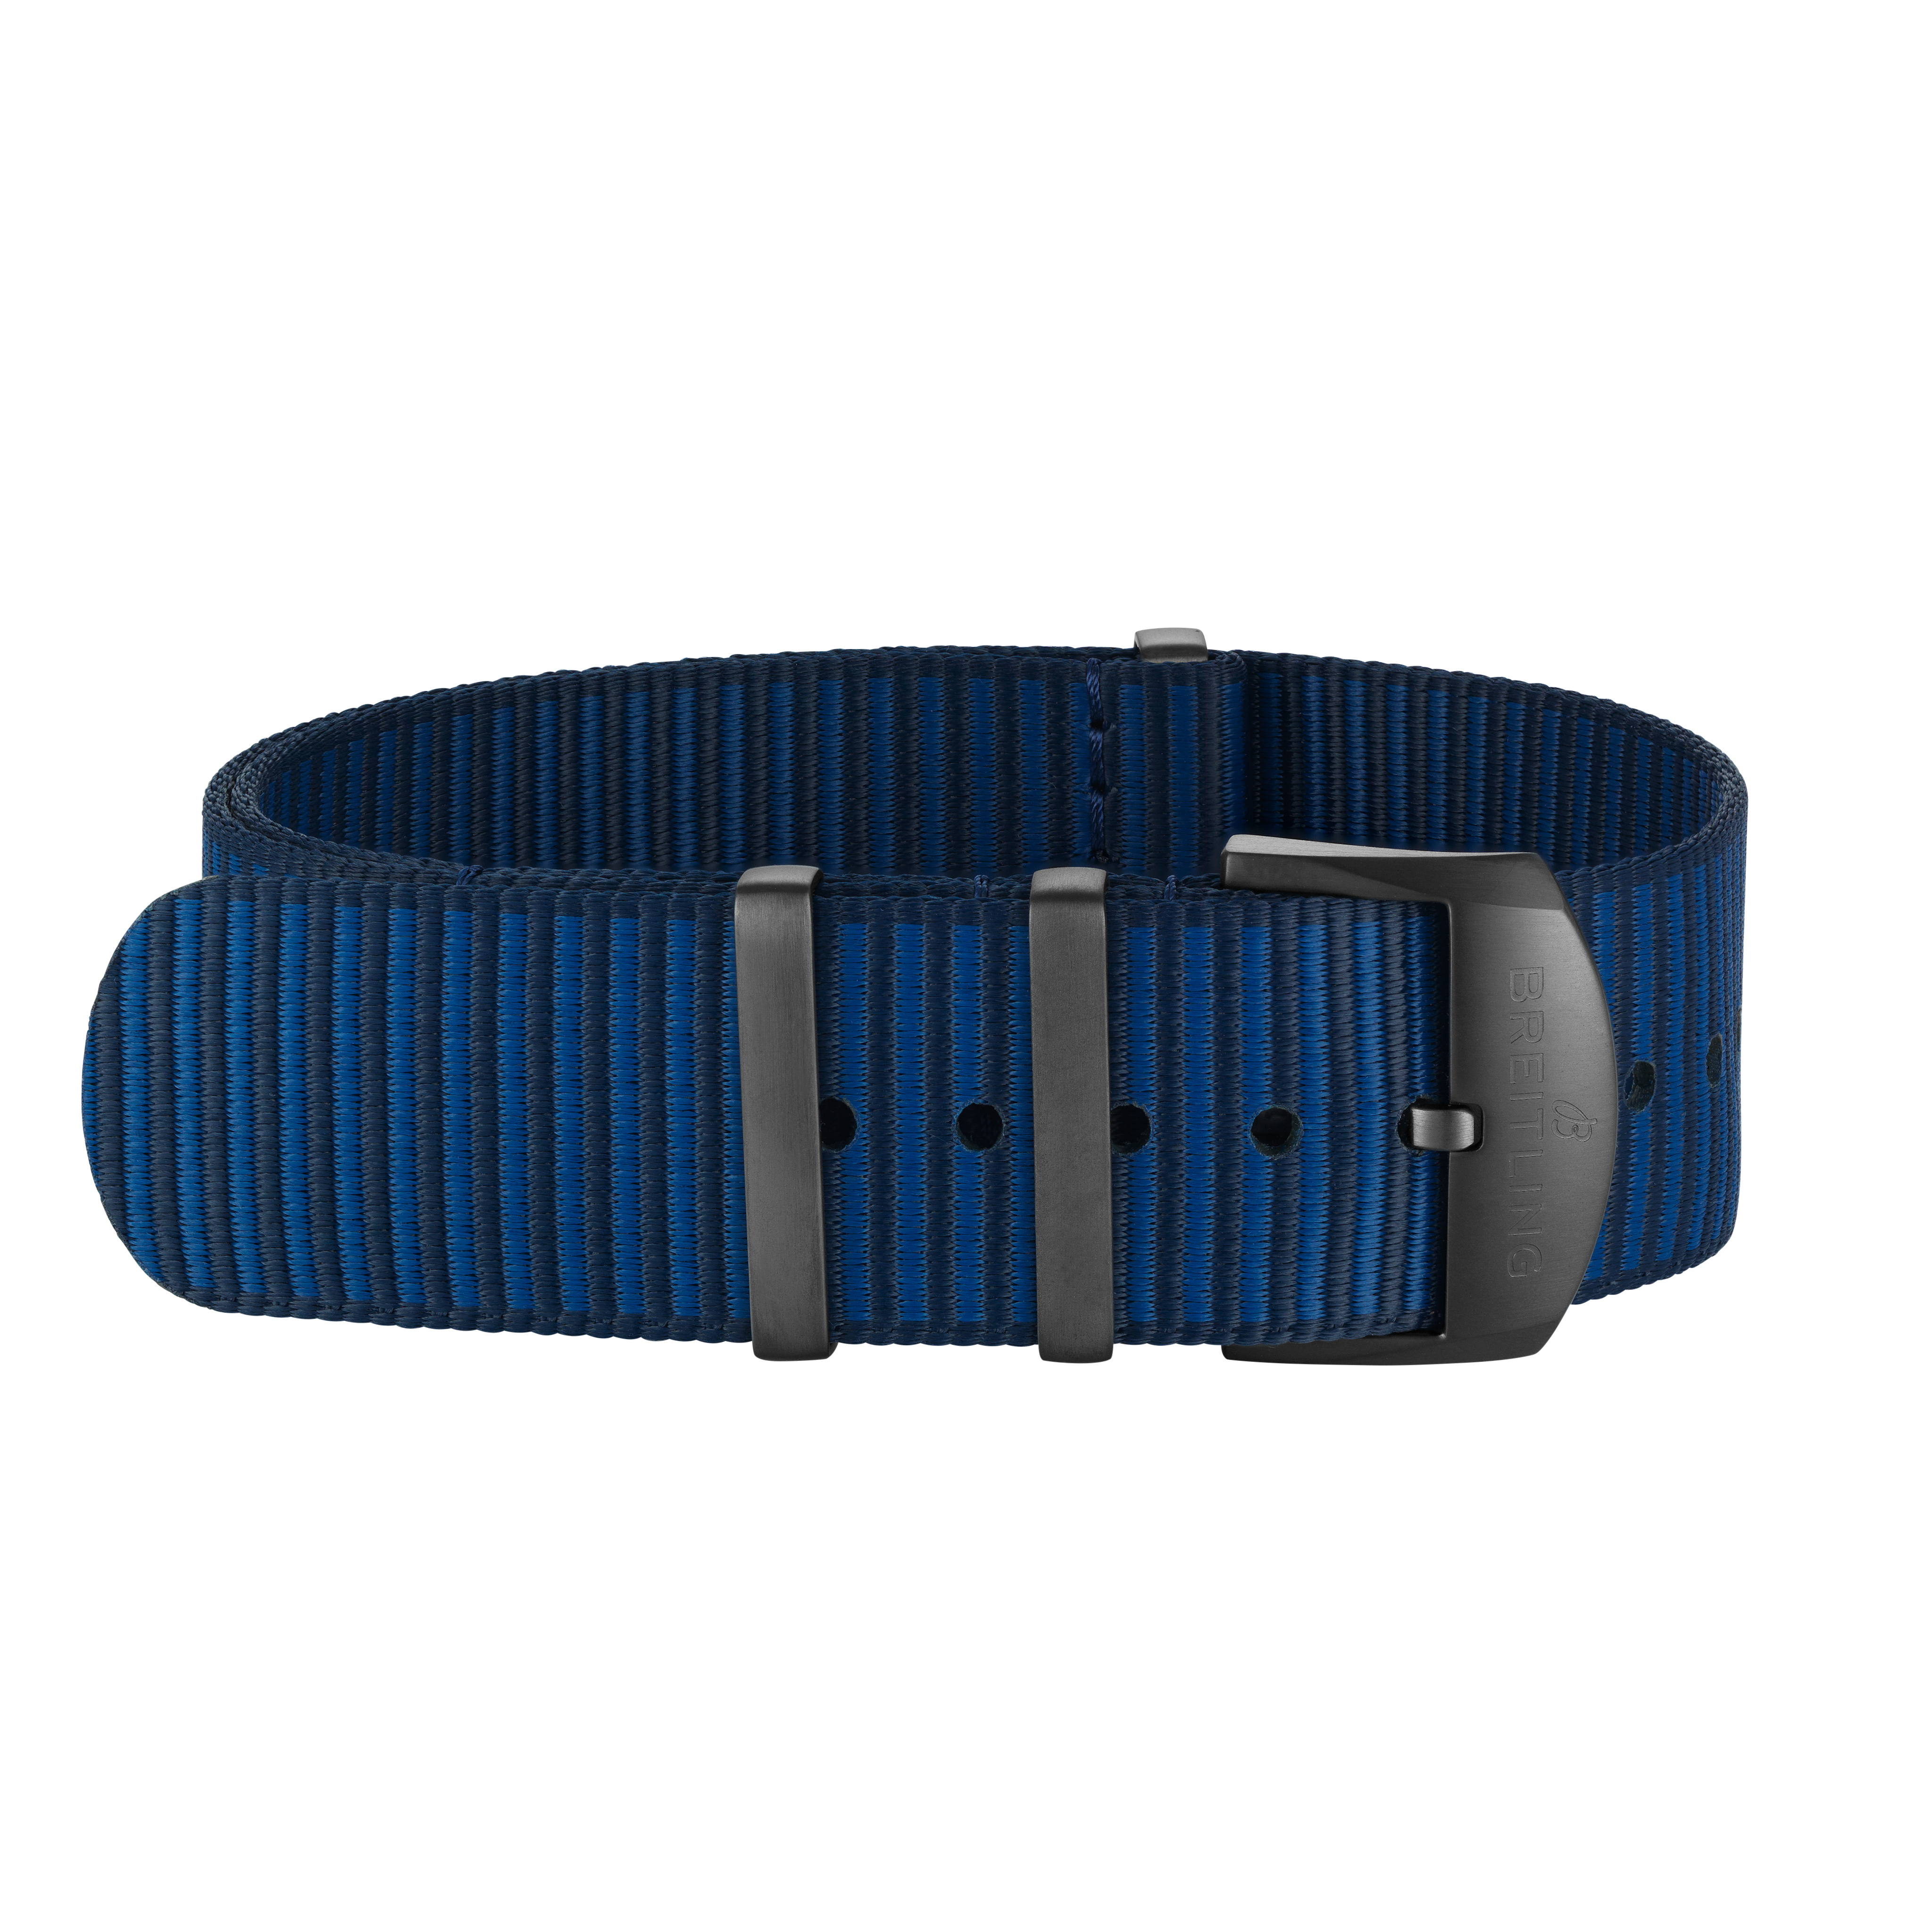 Bracelet une pièce Outerknown en fil ECONYL® bleu foncé (avec passants en acier inoxydable avec revêtement DLC) - 24 mm